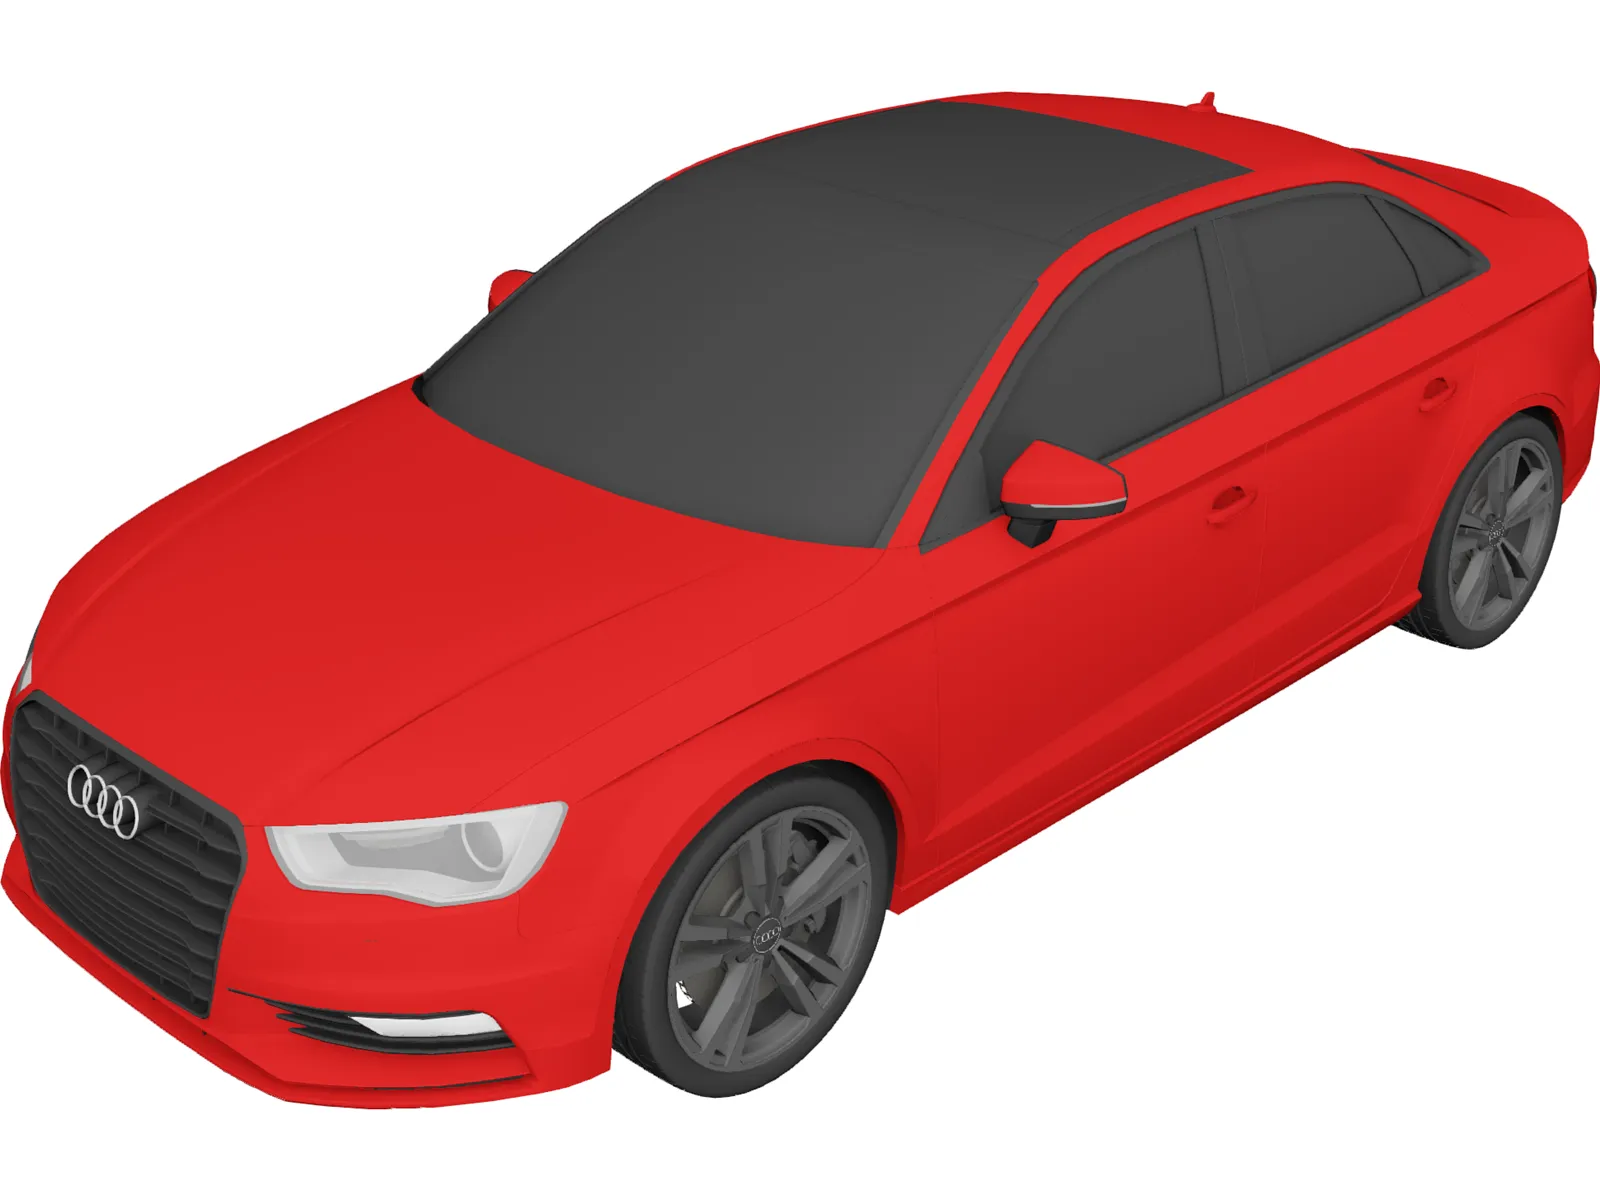 Audi A3 Sedan 2.0 TFSI (2015) 3D Model